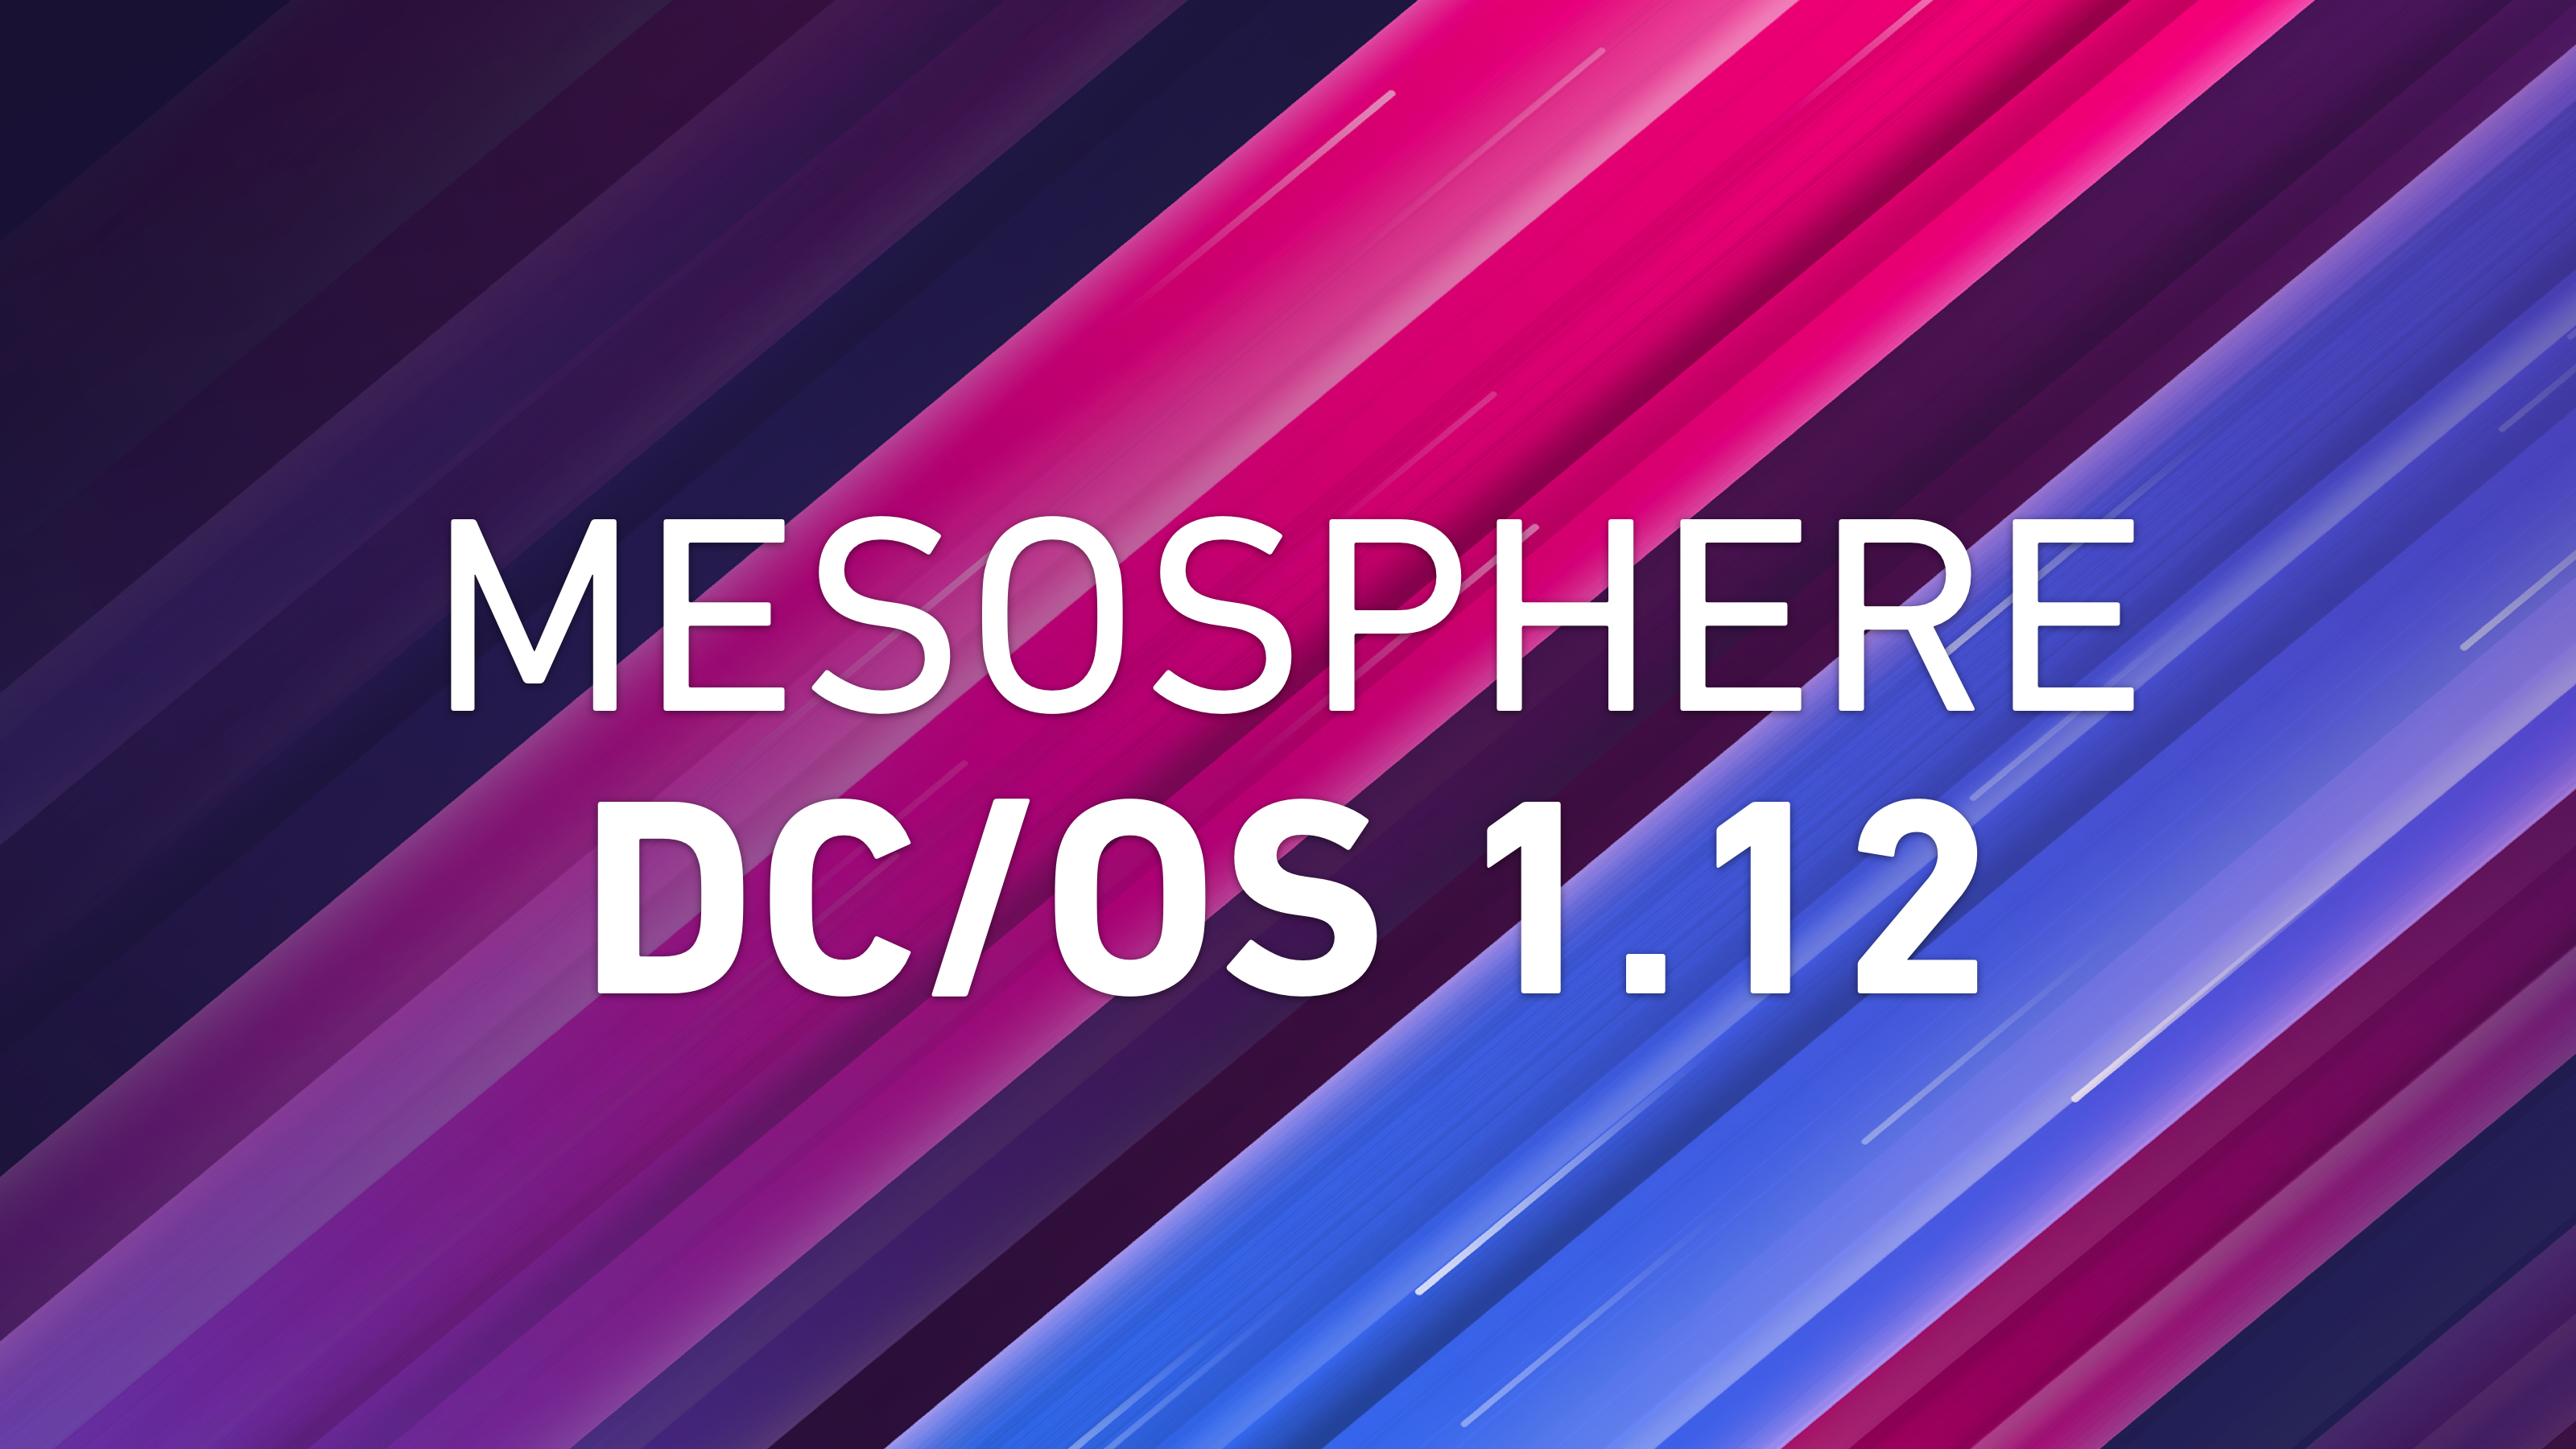 DC/OS 1.12 - Update | D2iQ